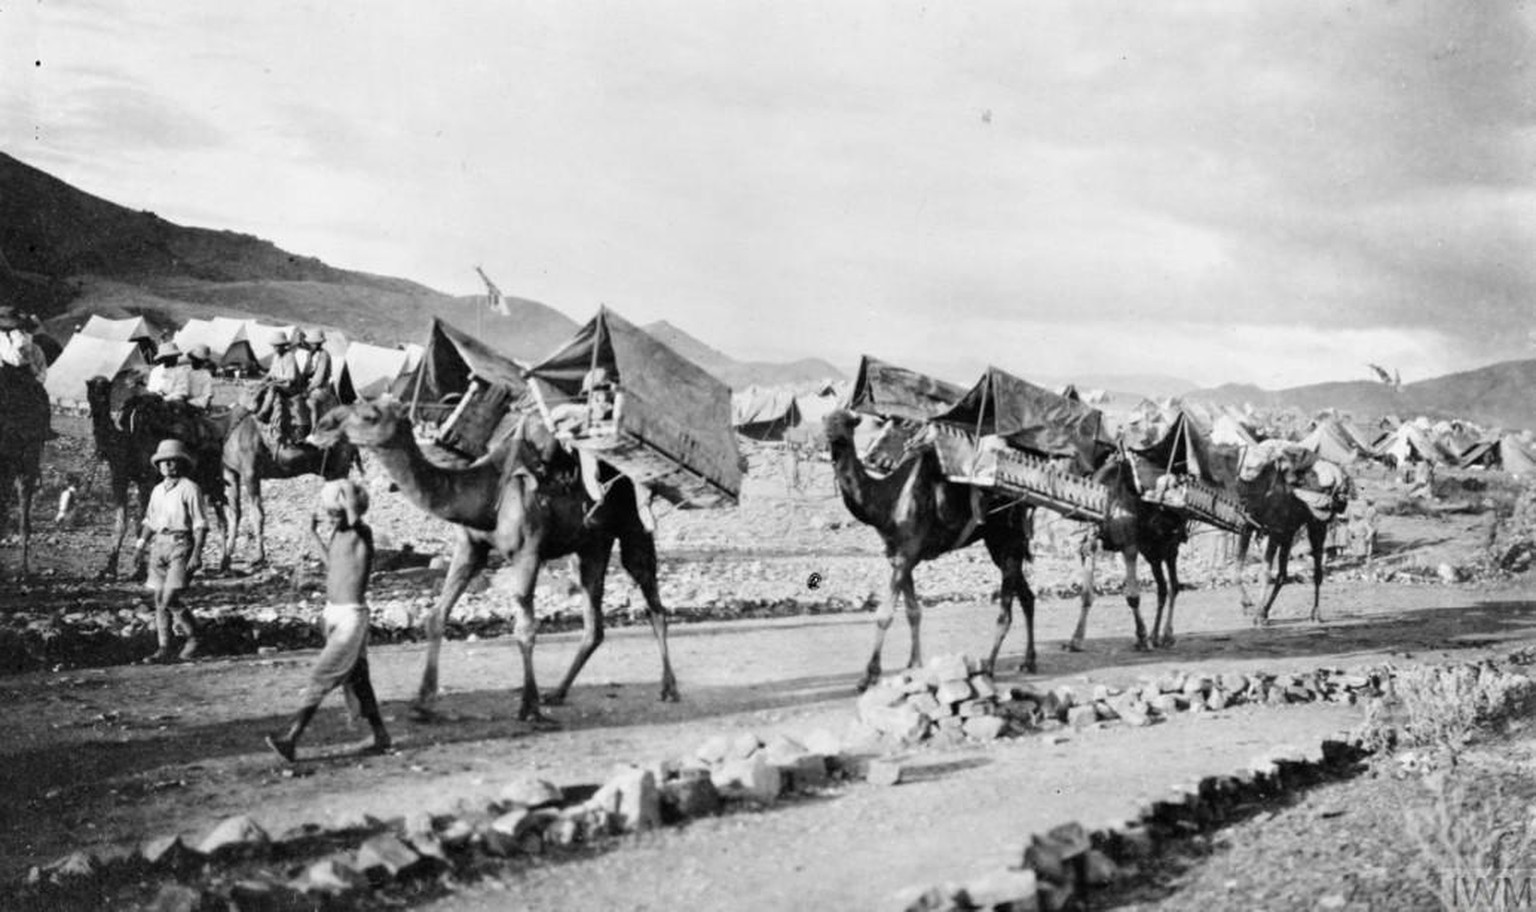 Verwundetentransport im Nordwesten Indiens, 1917. Dromedare kamen im Ersten Weltkrieg auch in den Feldzügen der Briten auf dem Sinai und in Palästina zum Einsatz. 